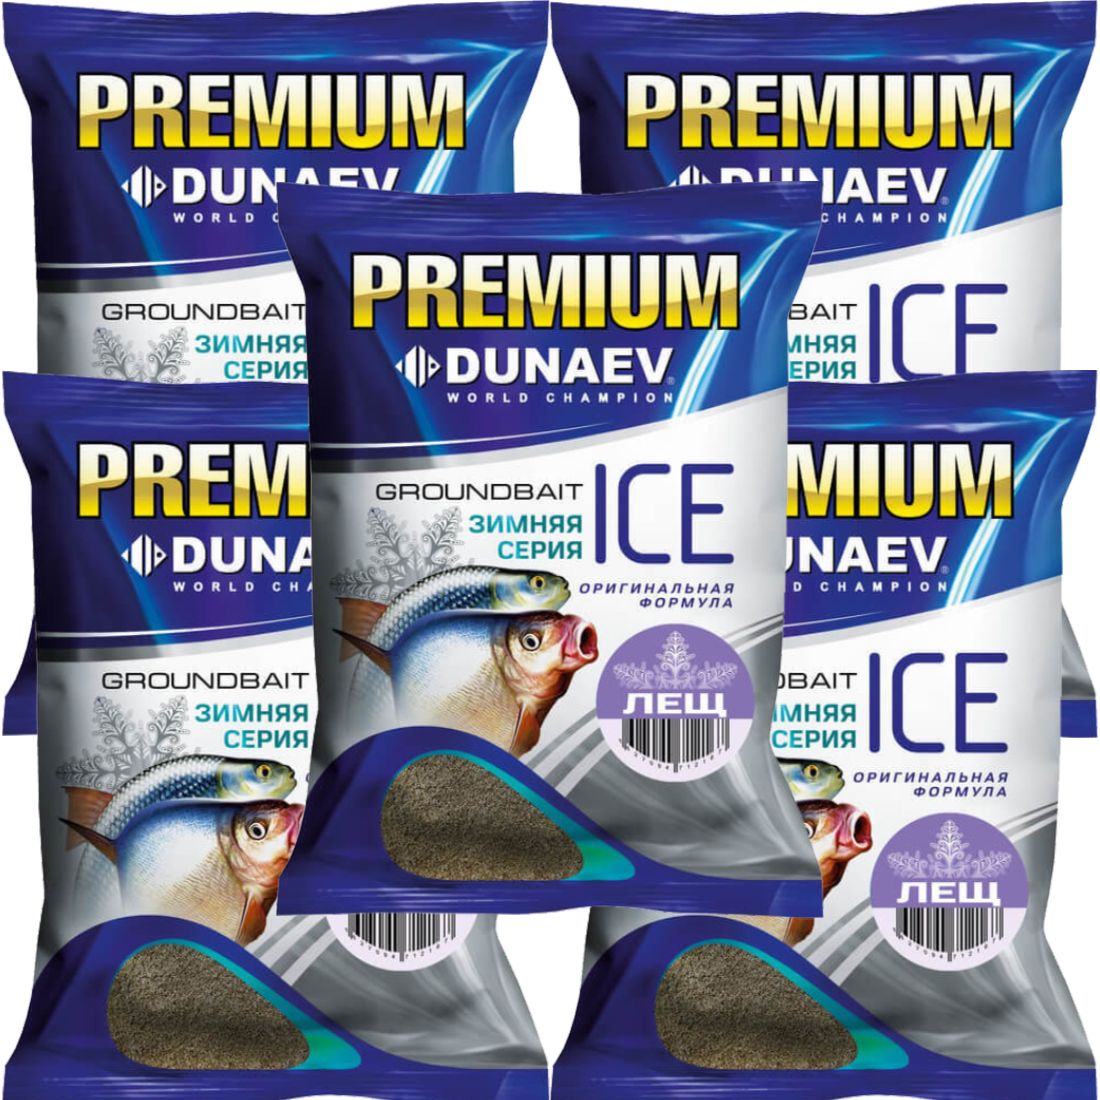 Прикормка рыболовная Dunaev Ice Premium Лещ 5 упаковок - купить в Москве, цены на Мегамаркет | 600012106351